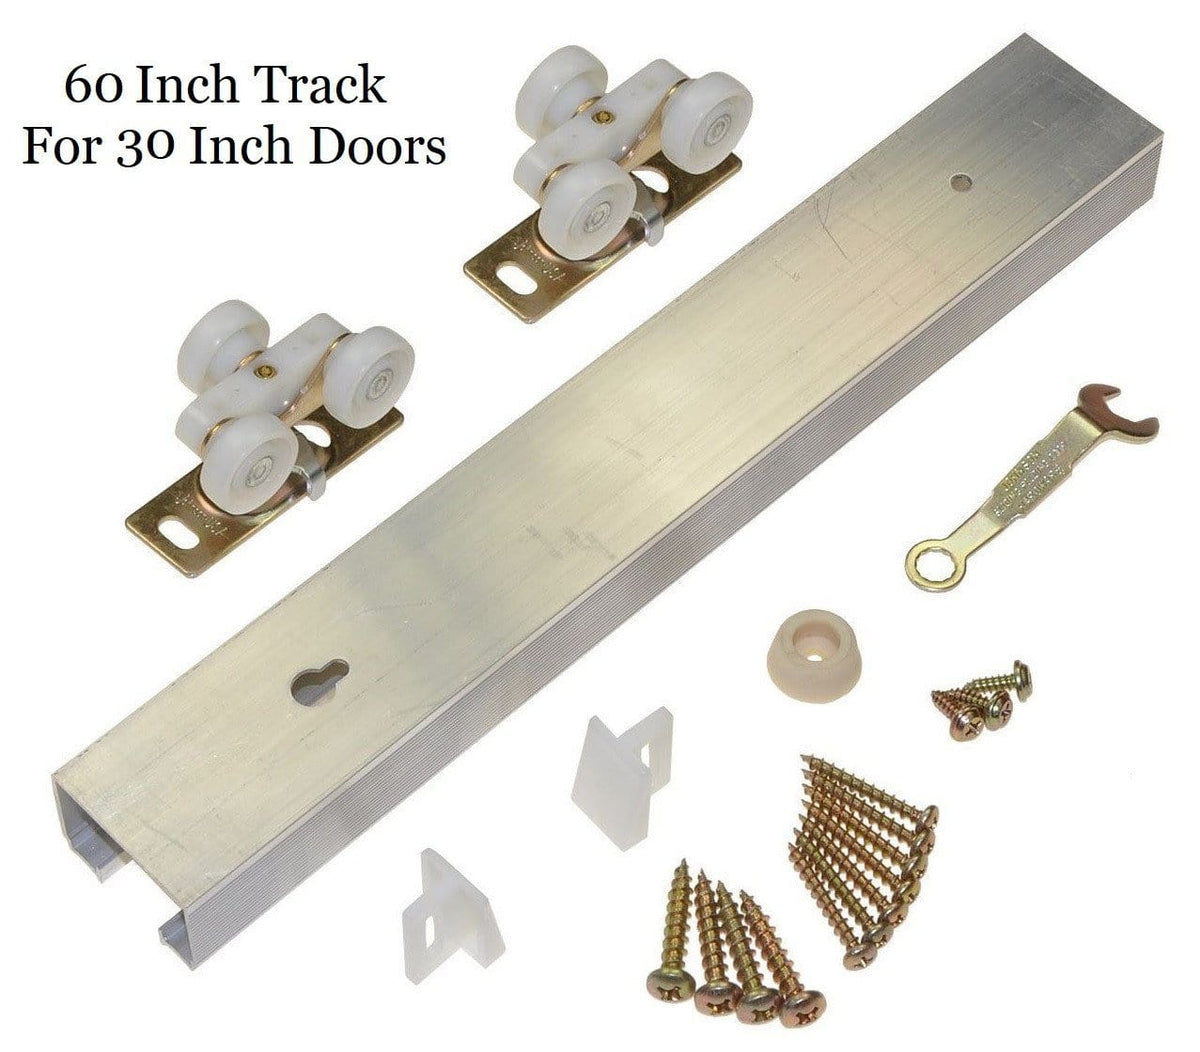 Pocket Door Hardware Set 60" Inch Track For 30" Inch Doors